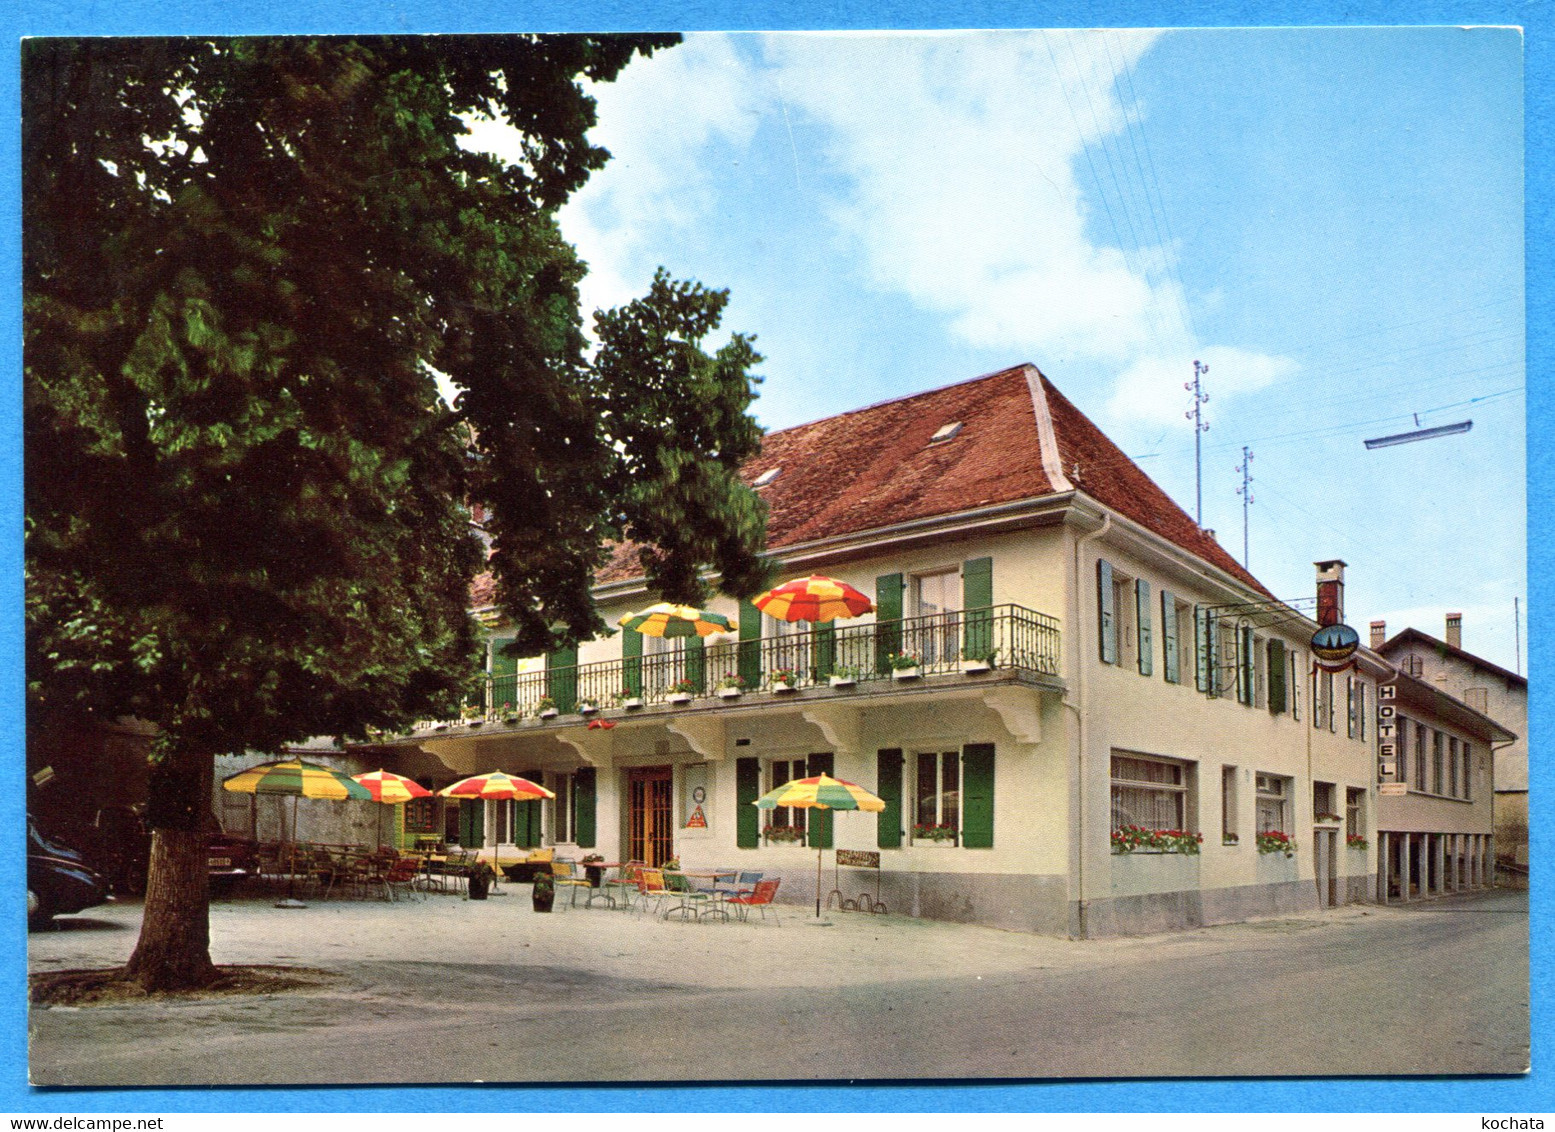 R005b, Montricher, Hotel Restaurant Aux Deux Sapins Famille G. Joseph-Moccand, GF, Non Circulée - Montricher